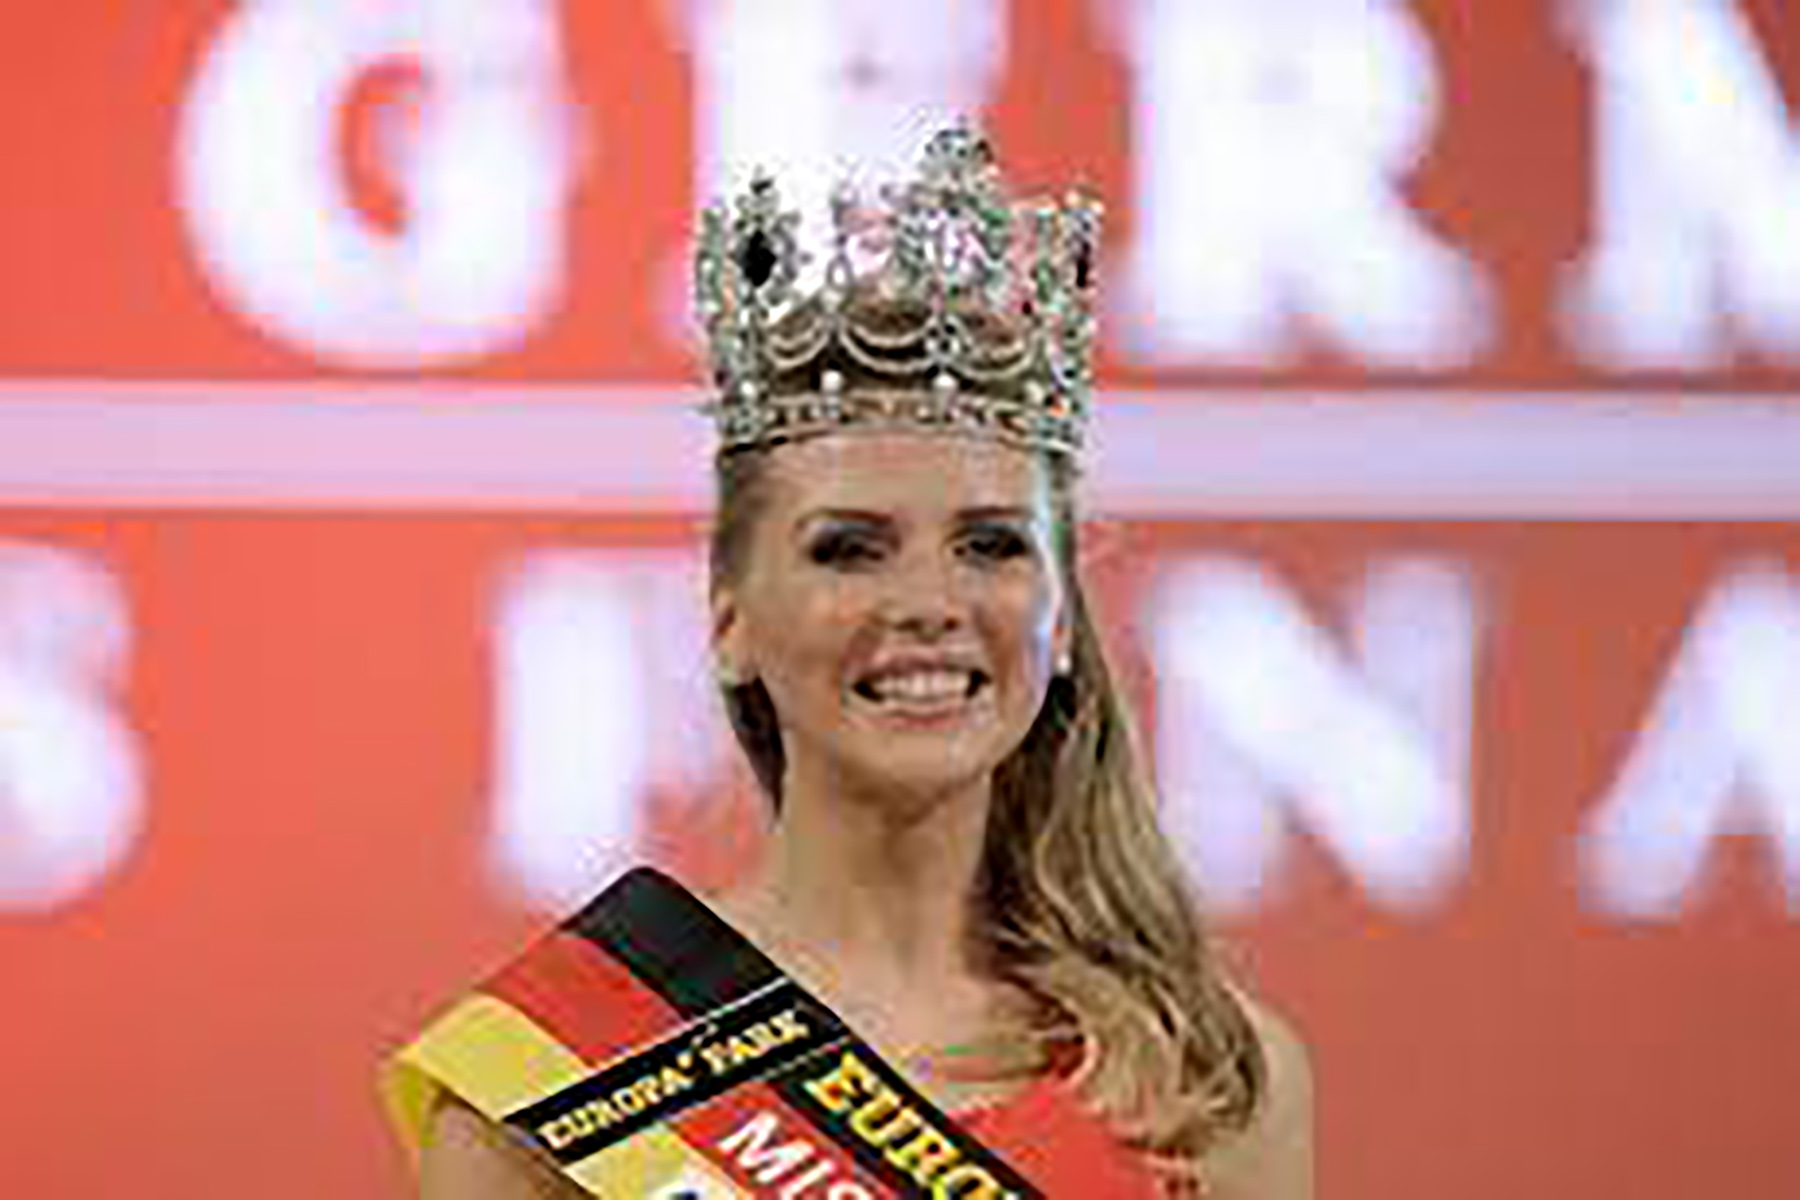 هوفمان ملكة جمال ألمانيا watanserb.com